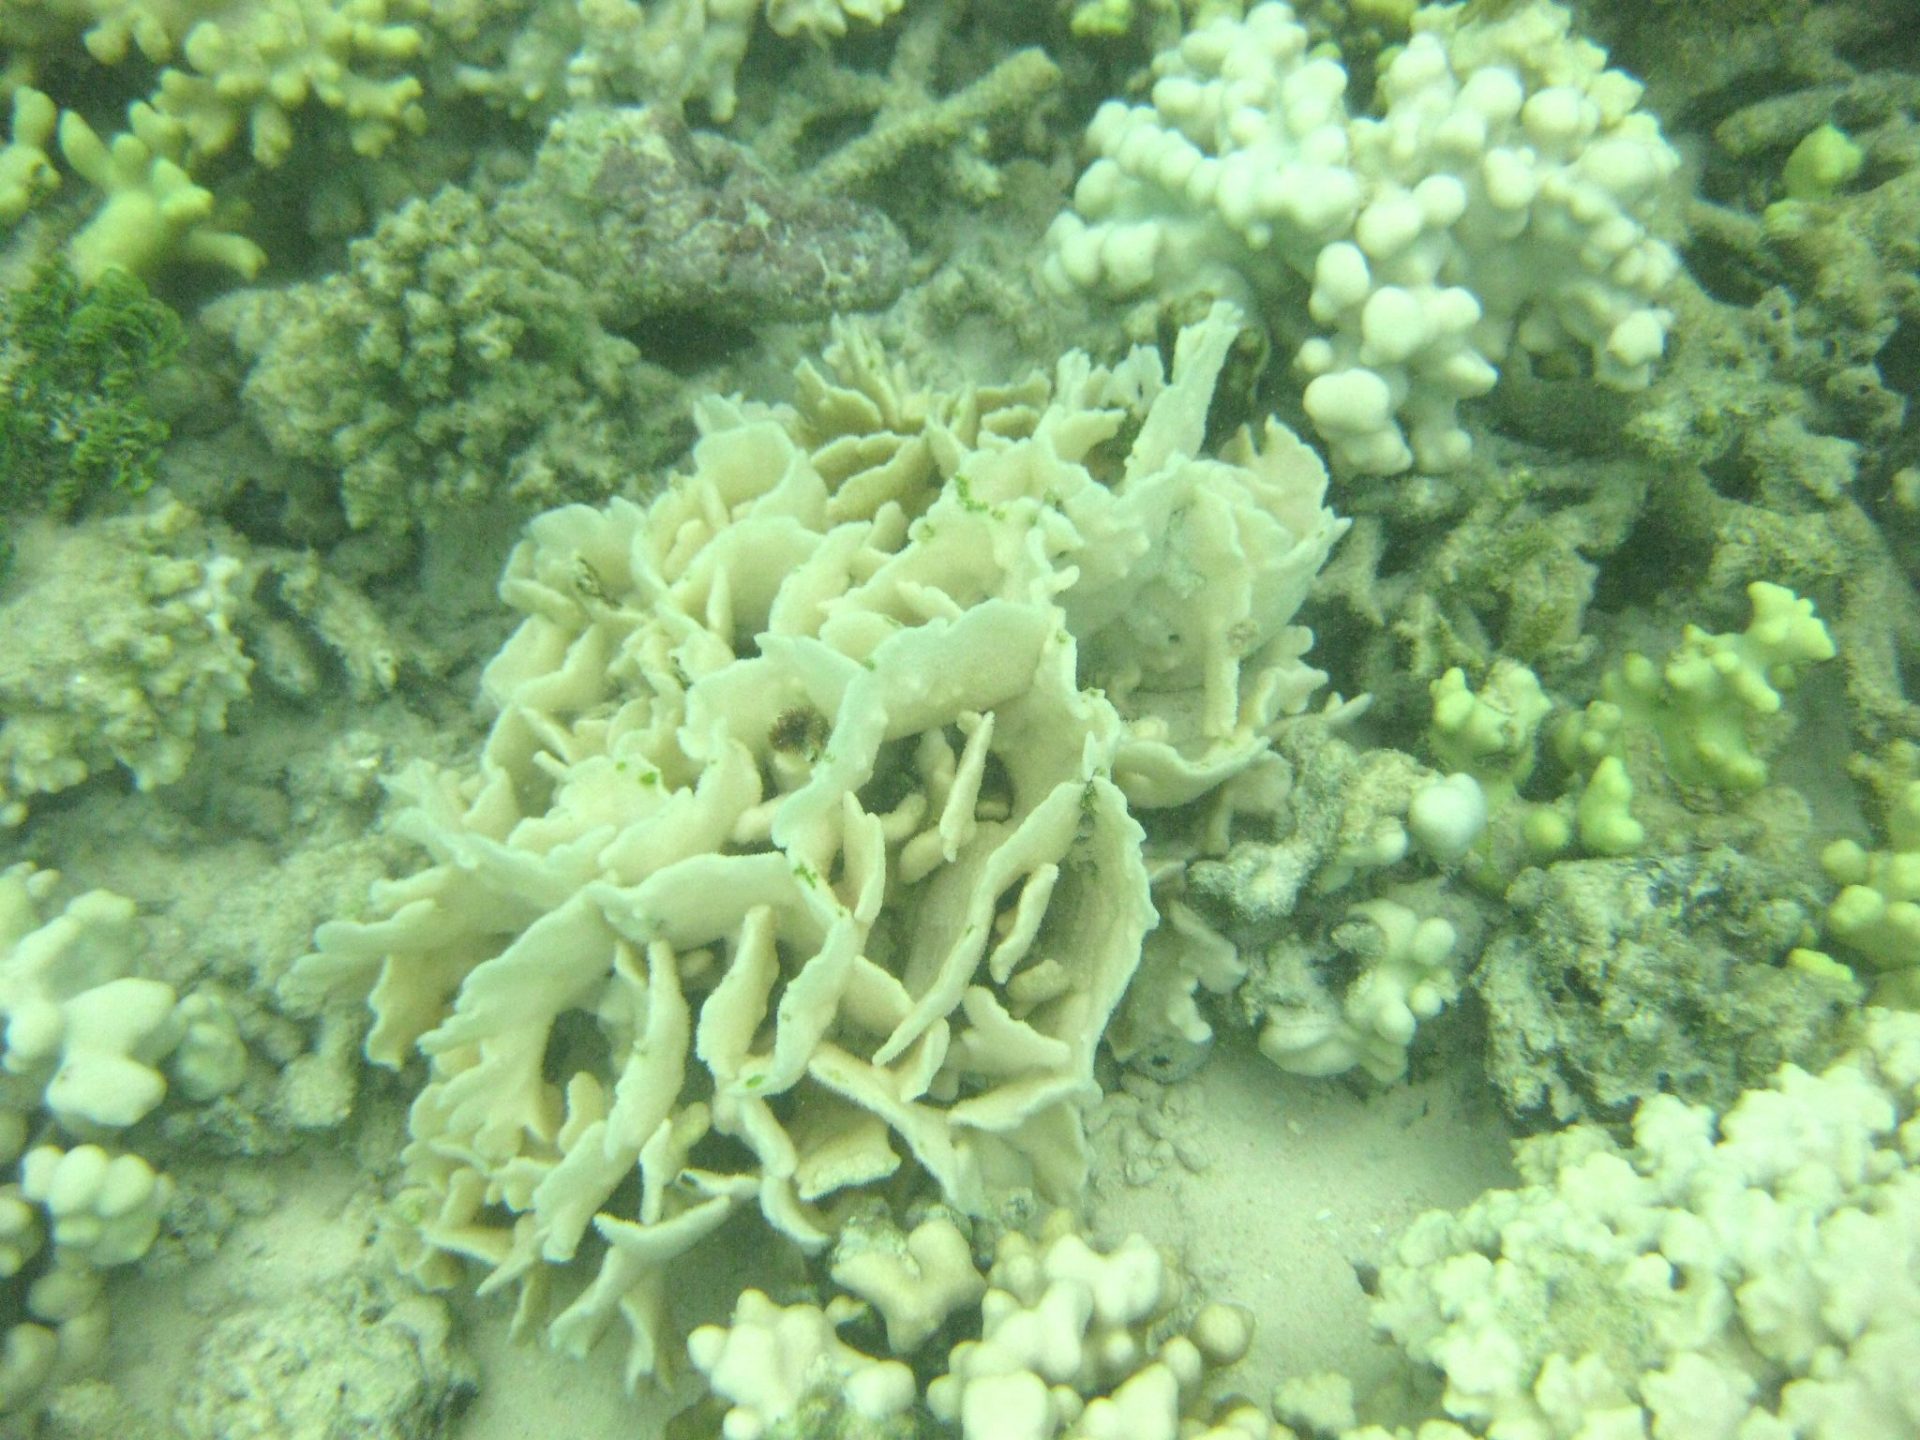 NOAA afirma que terminó el periodo crítico para los corales.